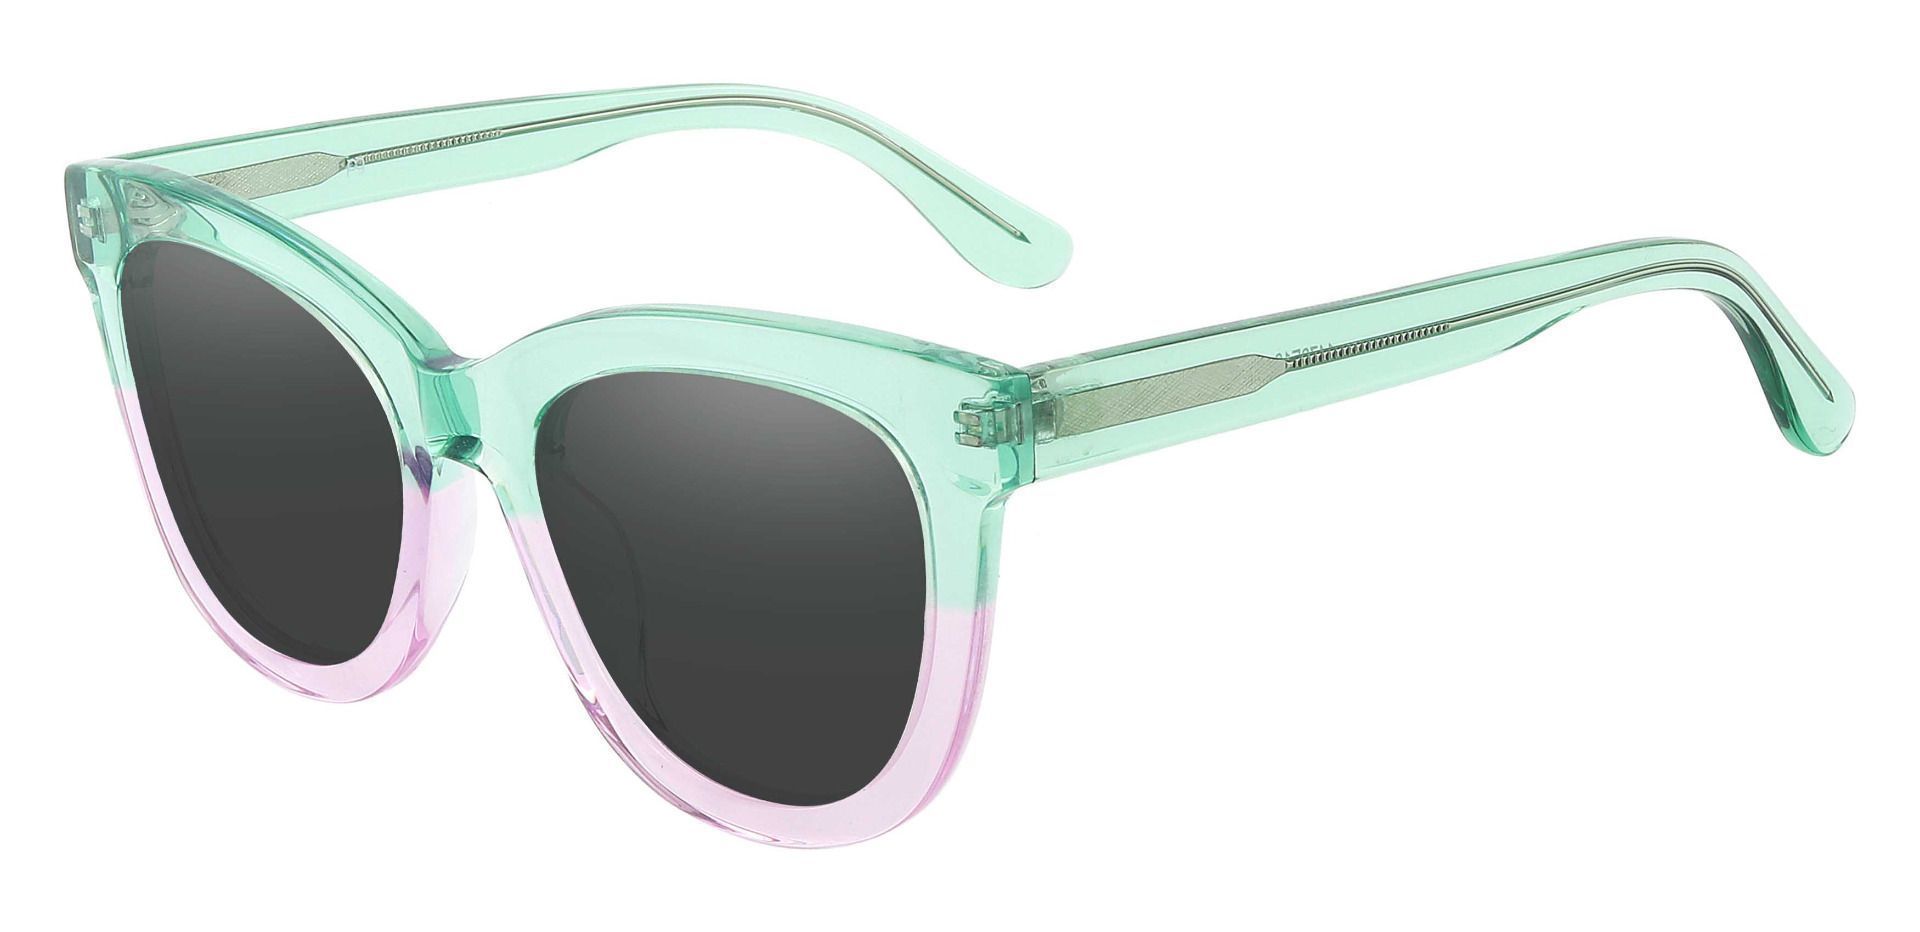 Delphi Square Prescription Sunglasses - Green Frame With Gray Lenses